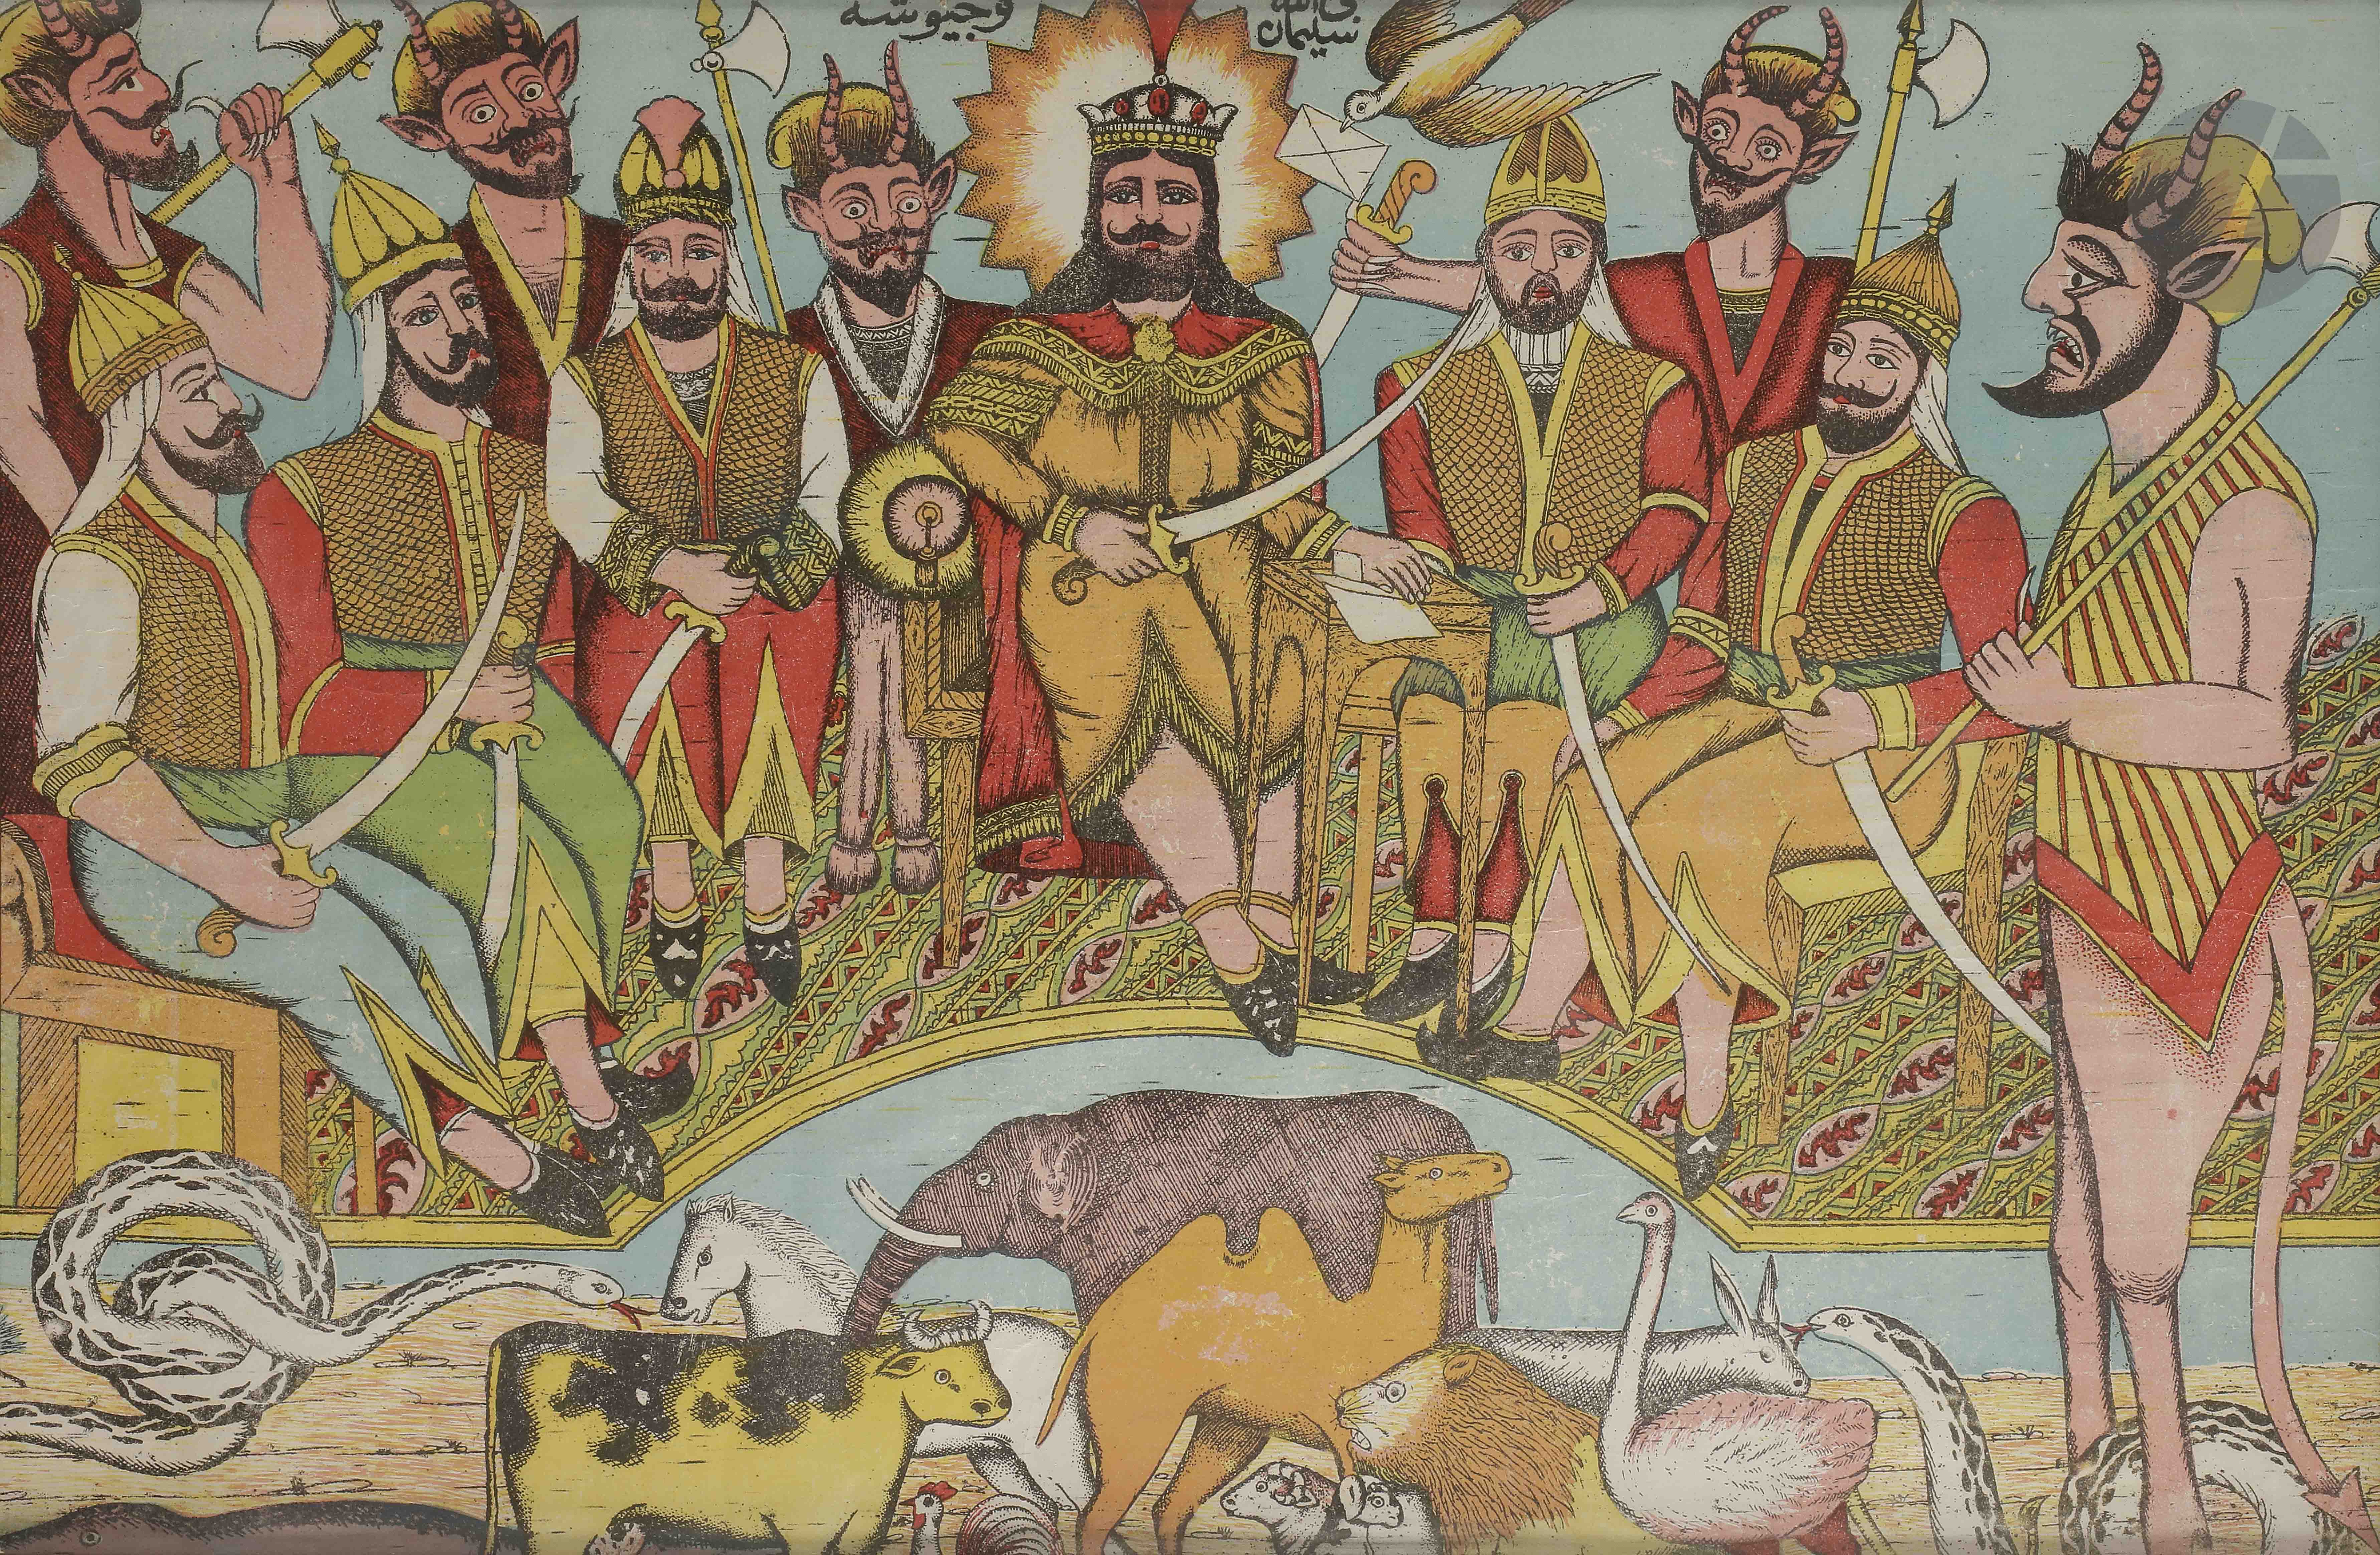 Suleyman et ses animaux Suleyman en trône entouré de sa cour, son armée et des diables, face à une